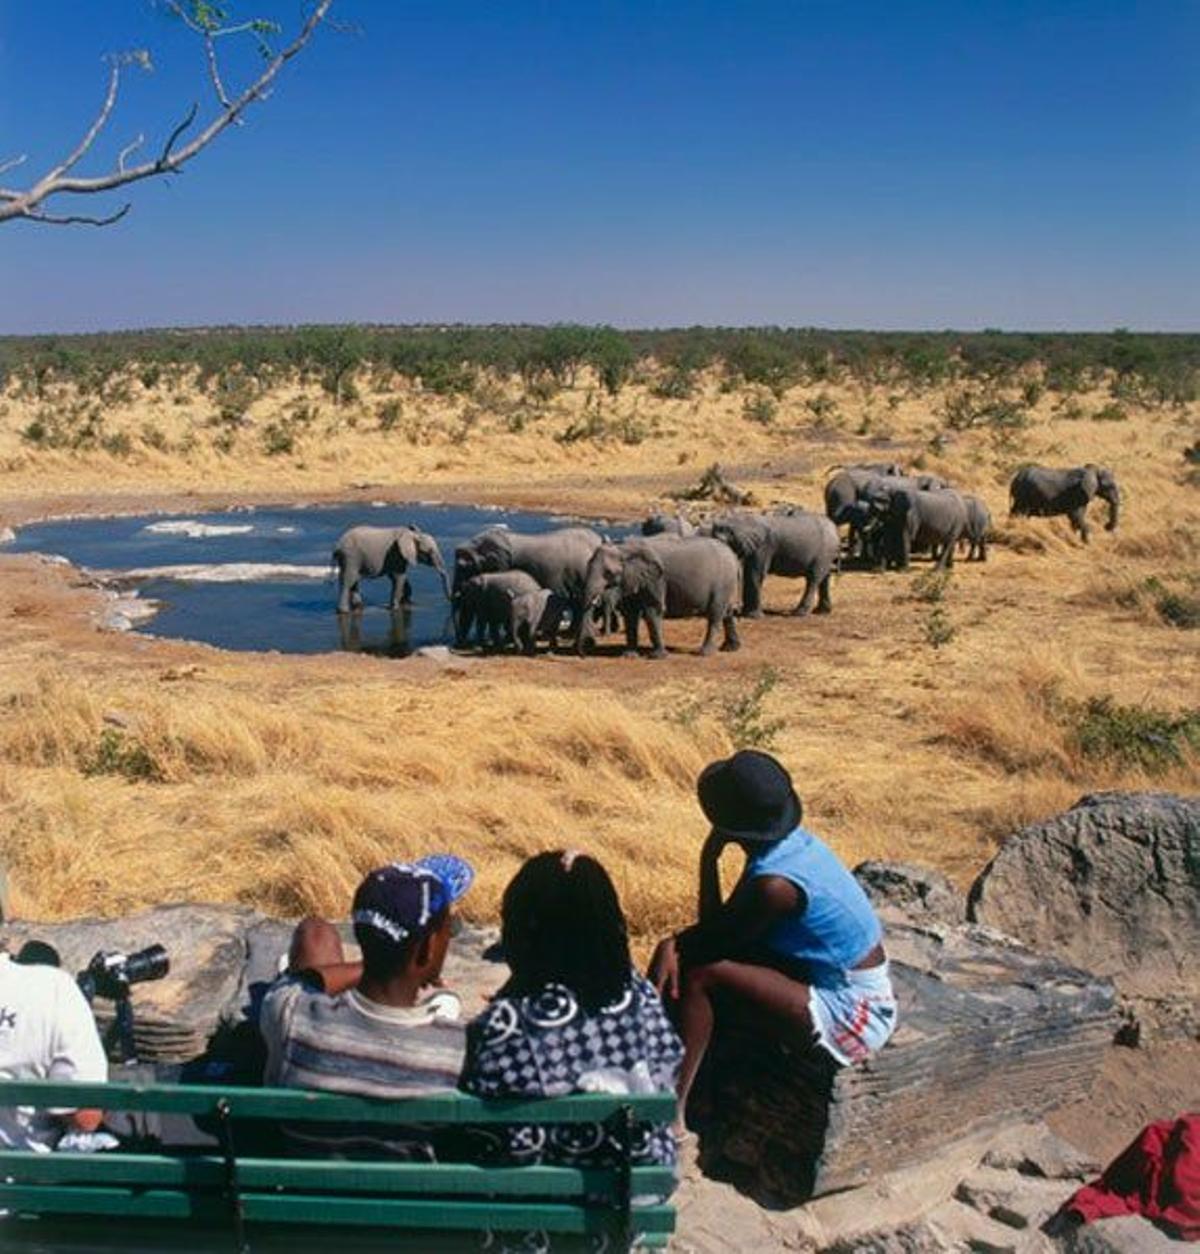 Turistas en un safari por el Parque Nacional de Etosha observan a una manada de elefantes.